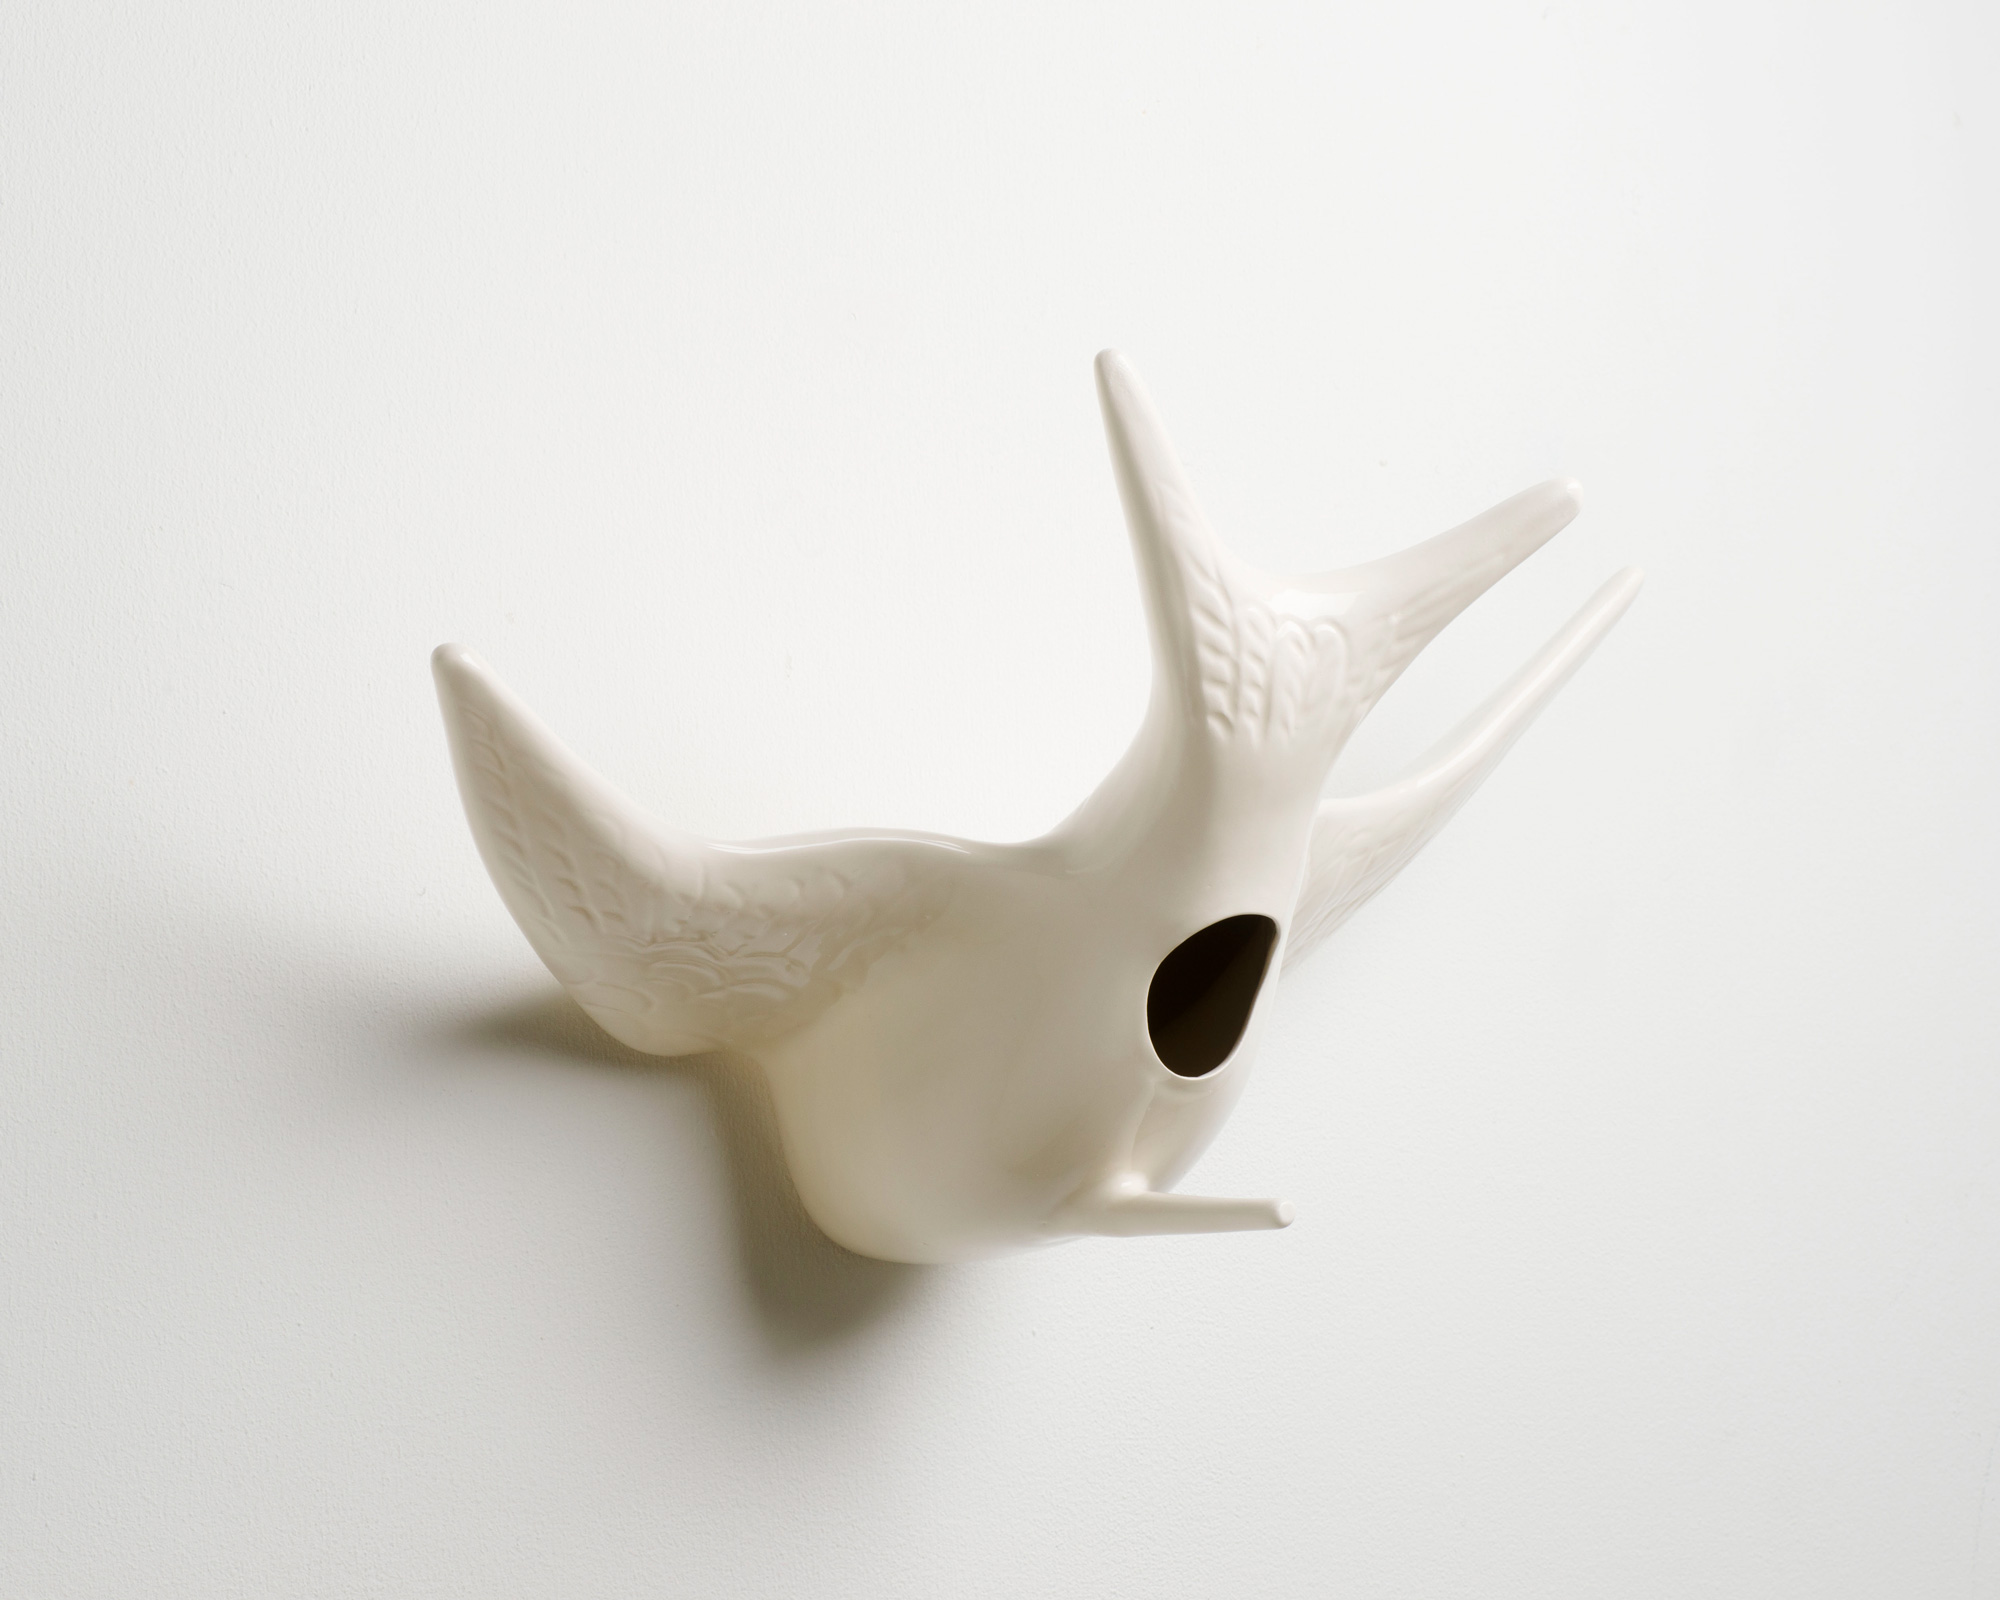 Swallow It - Céramique, émail - 34 cm - 2013 - Photo : Jacques Vandenberg
